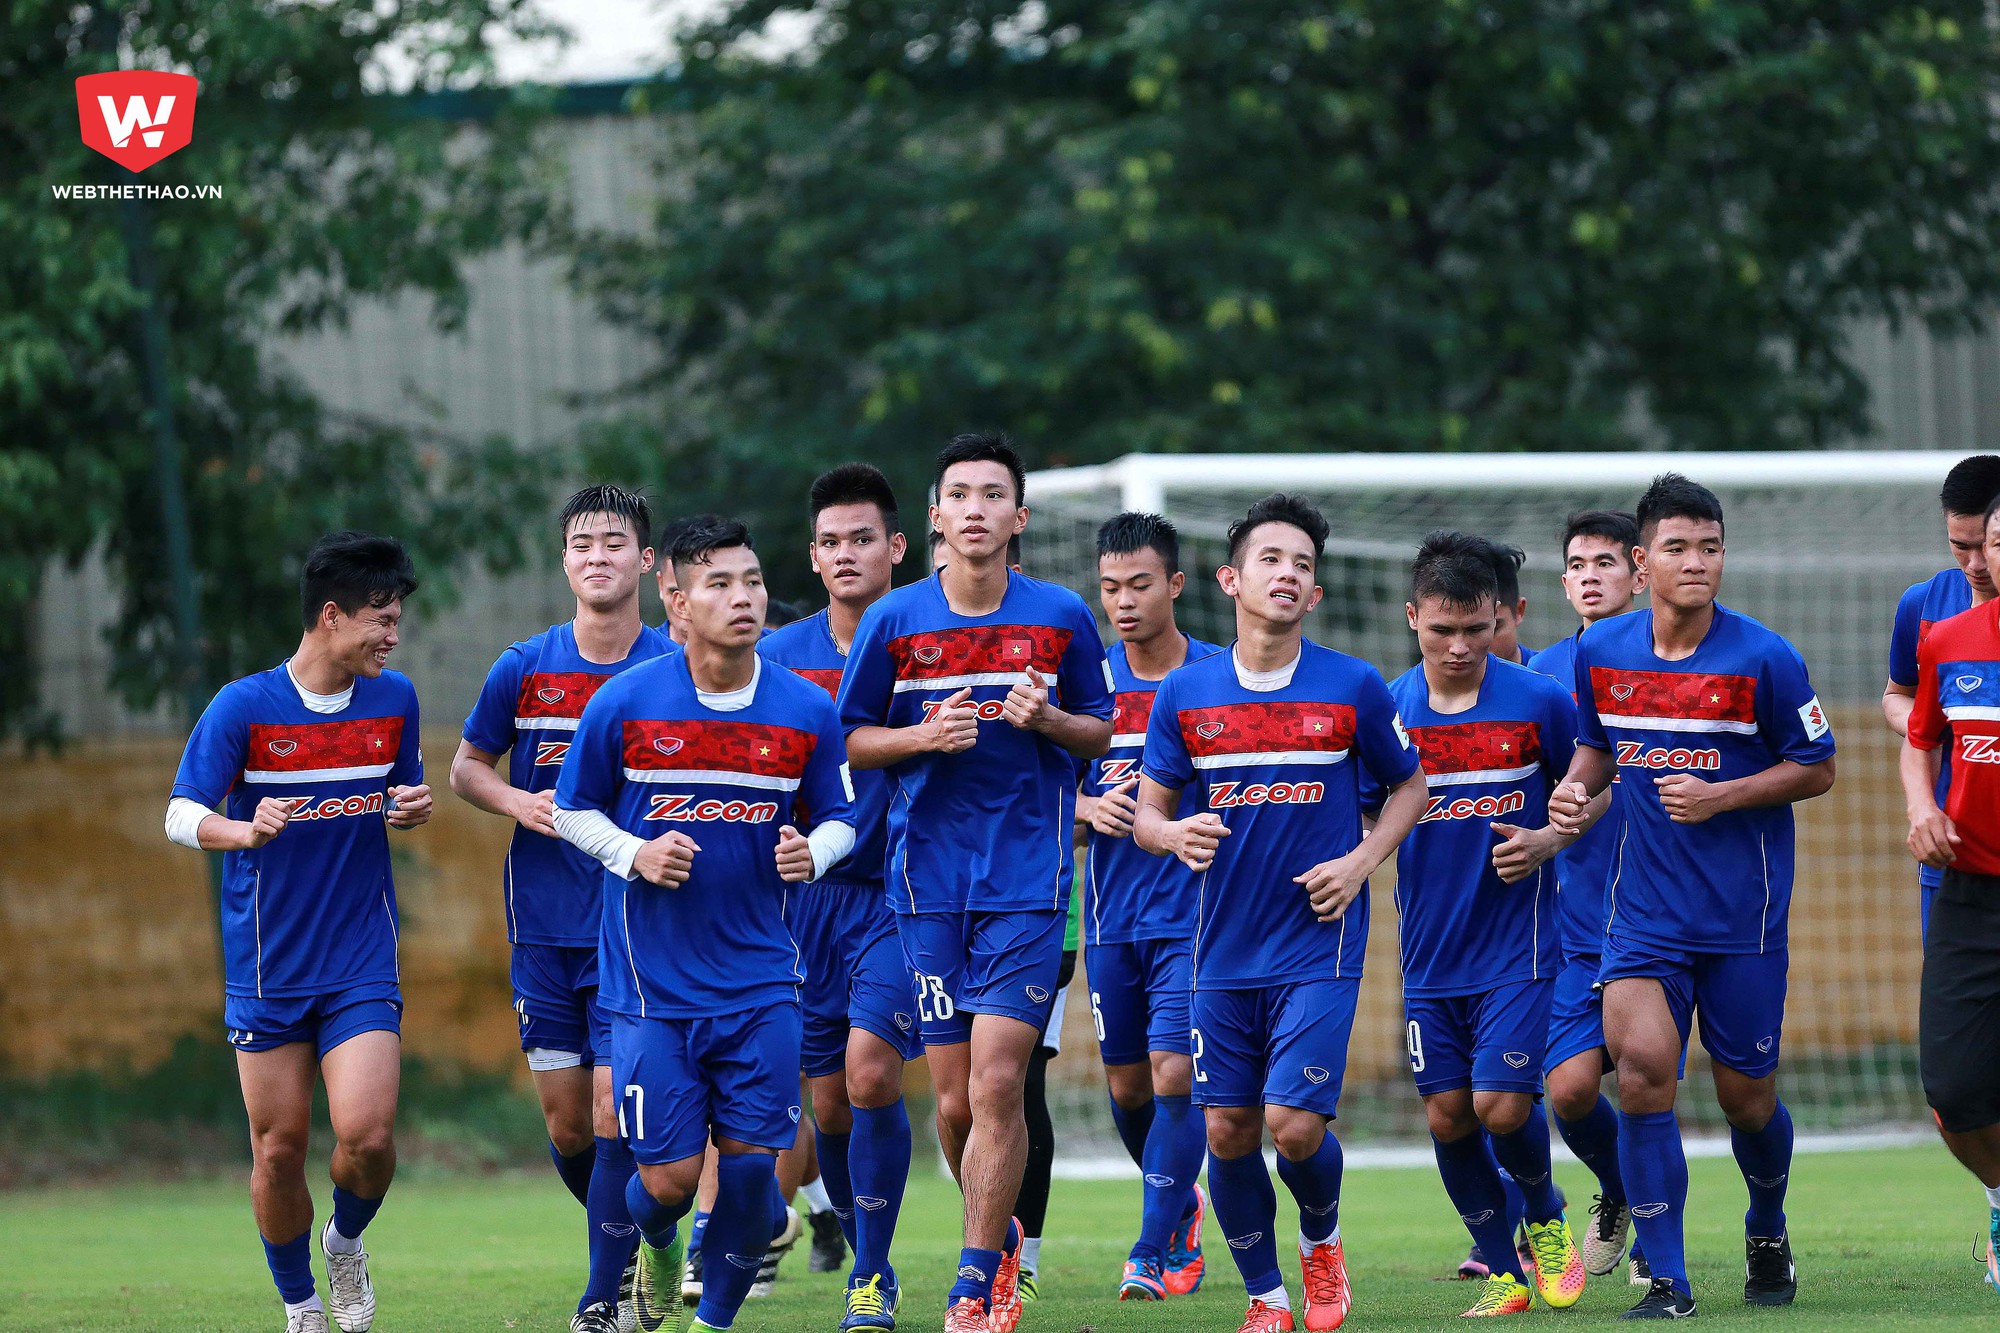 Chiều 4/7, U23 Việt Nam đã có buổi tập đầu tiên chuẩn bị cho VL U23 Châu Á với 27/28 cầu thủ trong danh sách, vắng mặt Xuân Trường do bận thi đấu tại Hàn Quốc đến 11/7 mới về hội quân cùng đội.